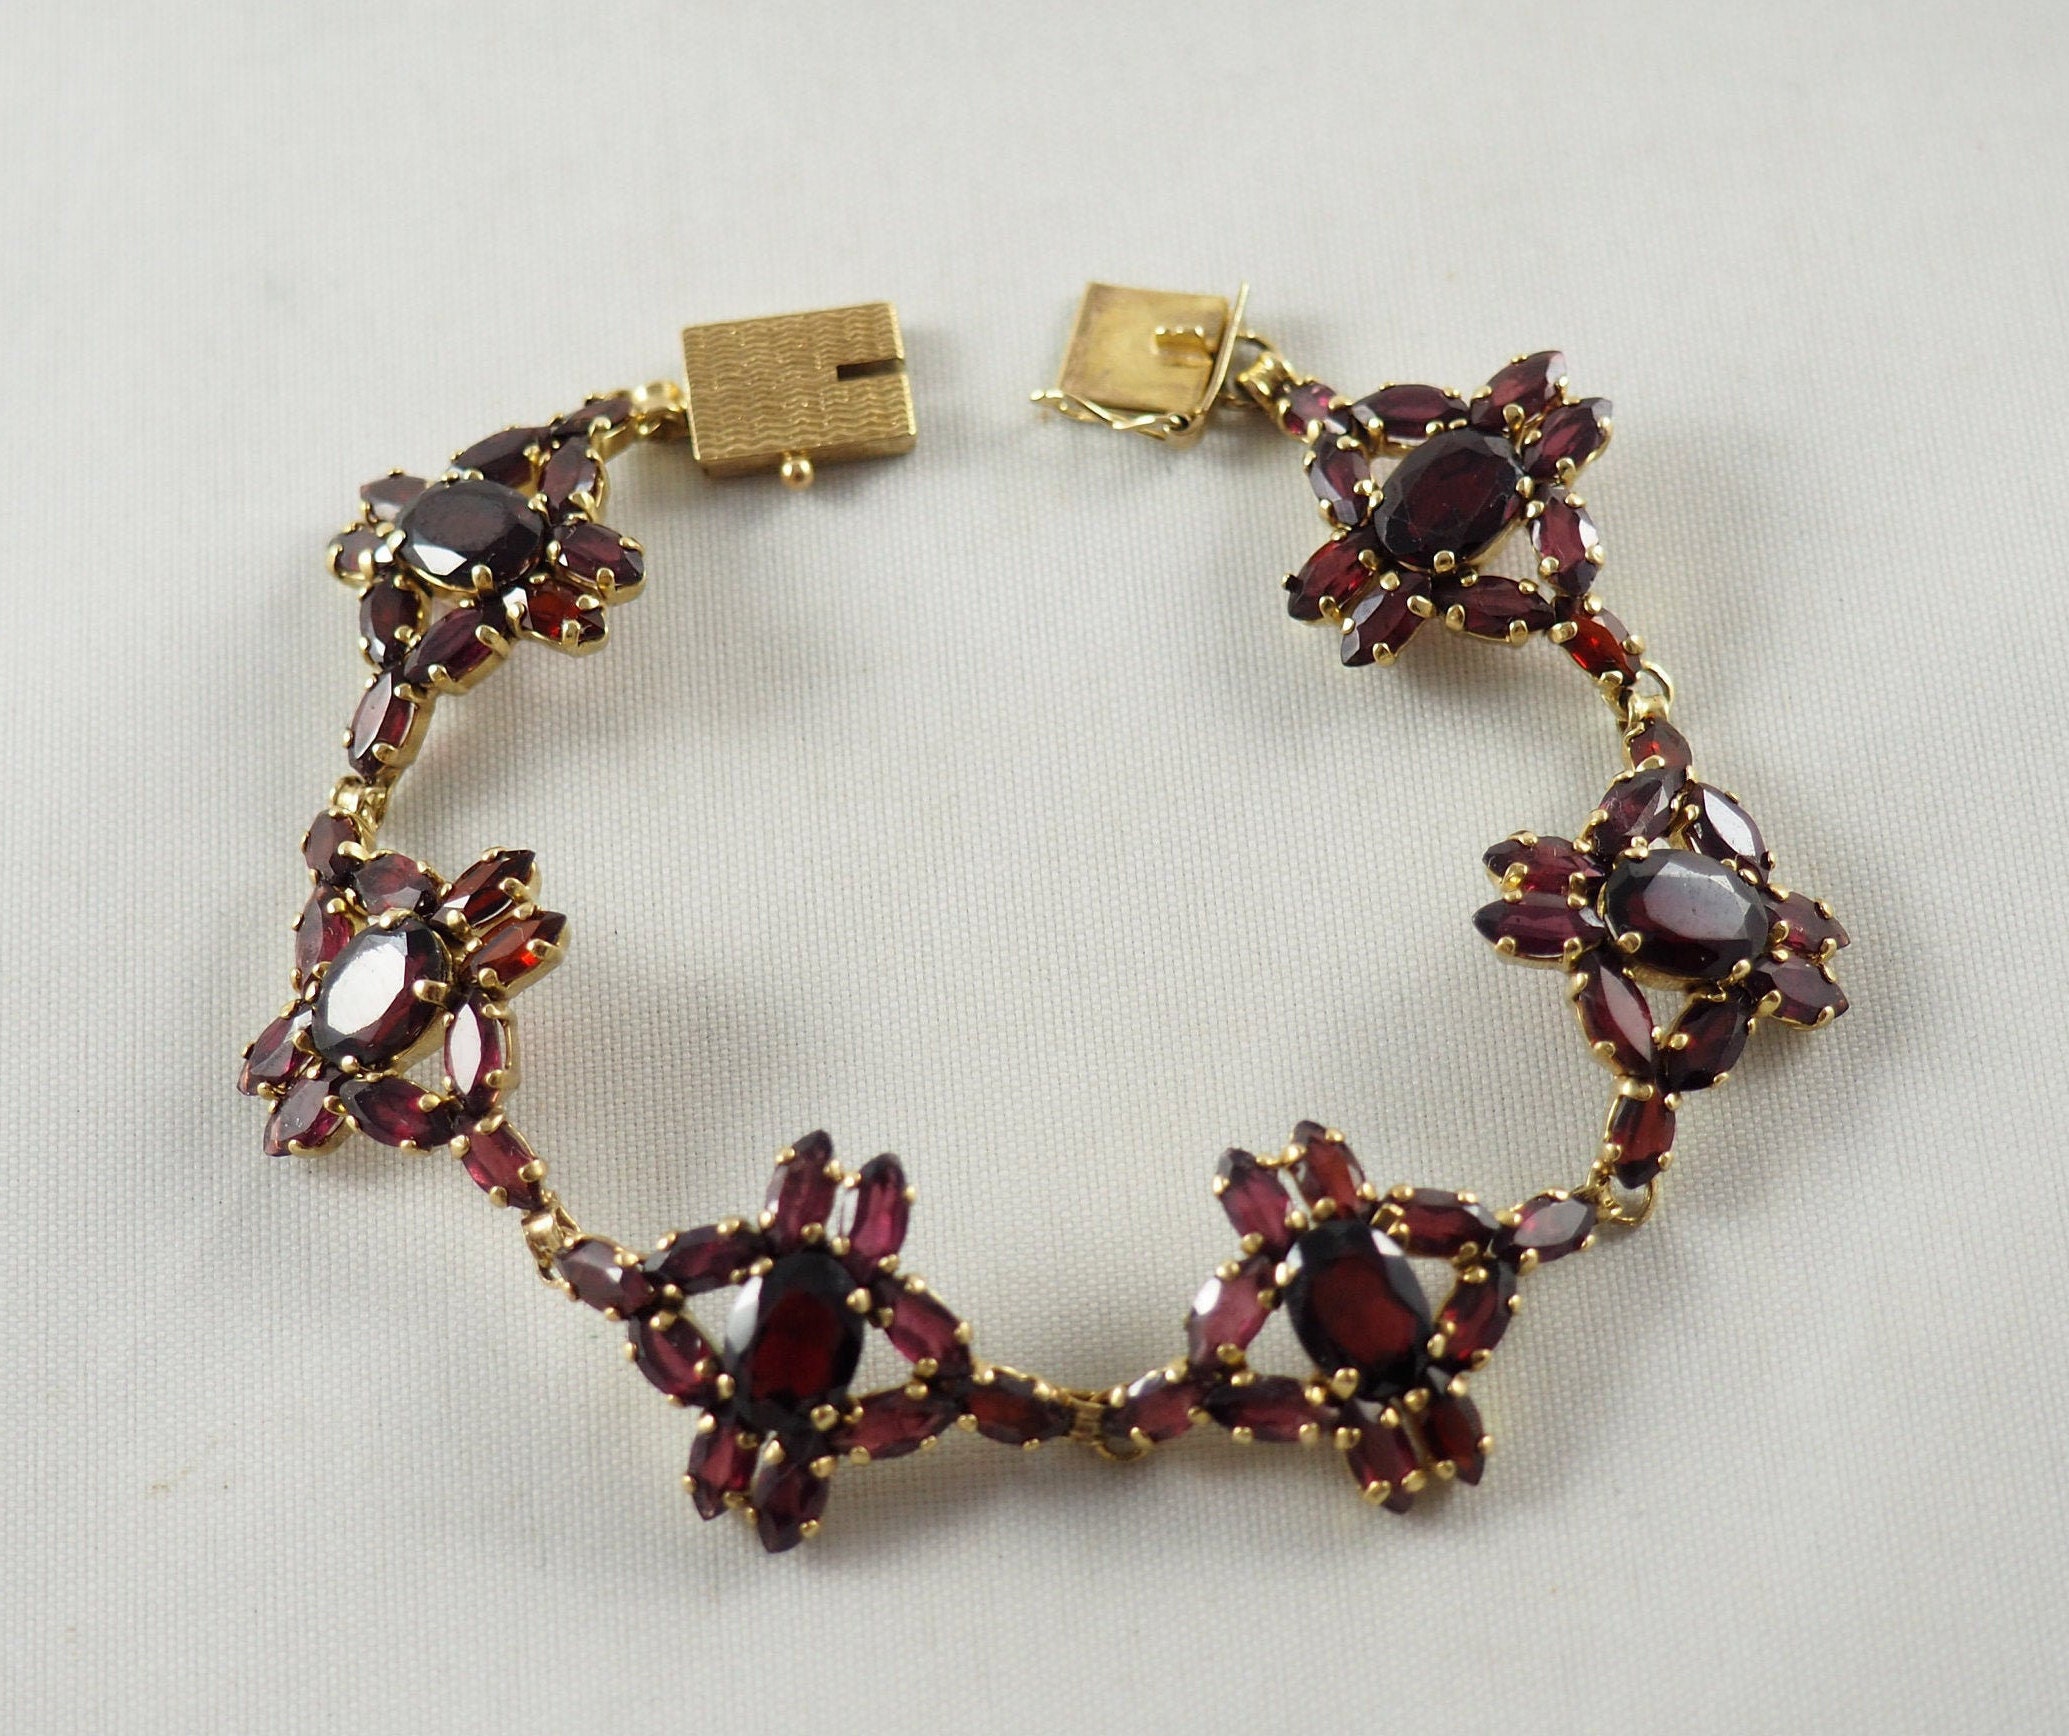 Garnet bracelet in 14 carat gold – The Antique Ring Shop